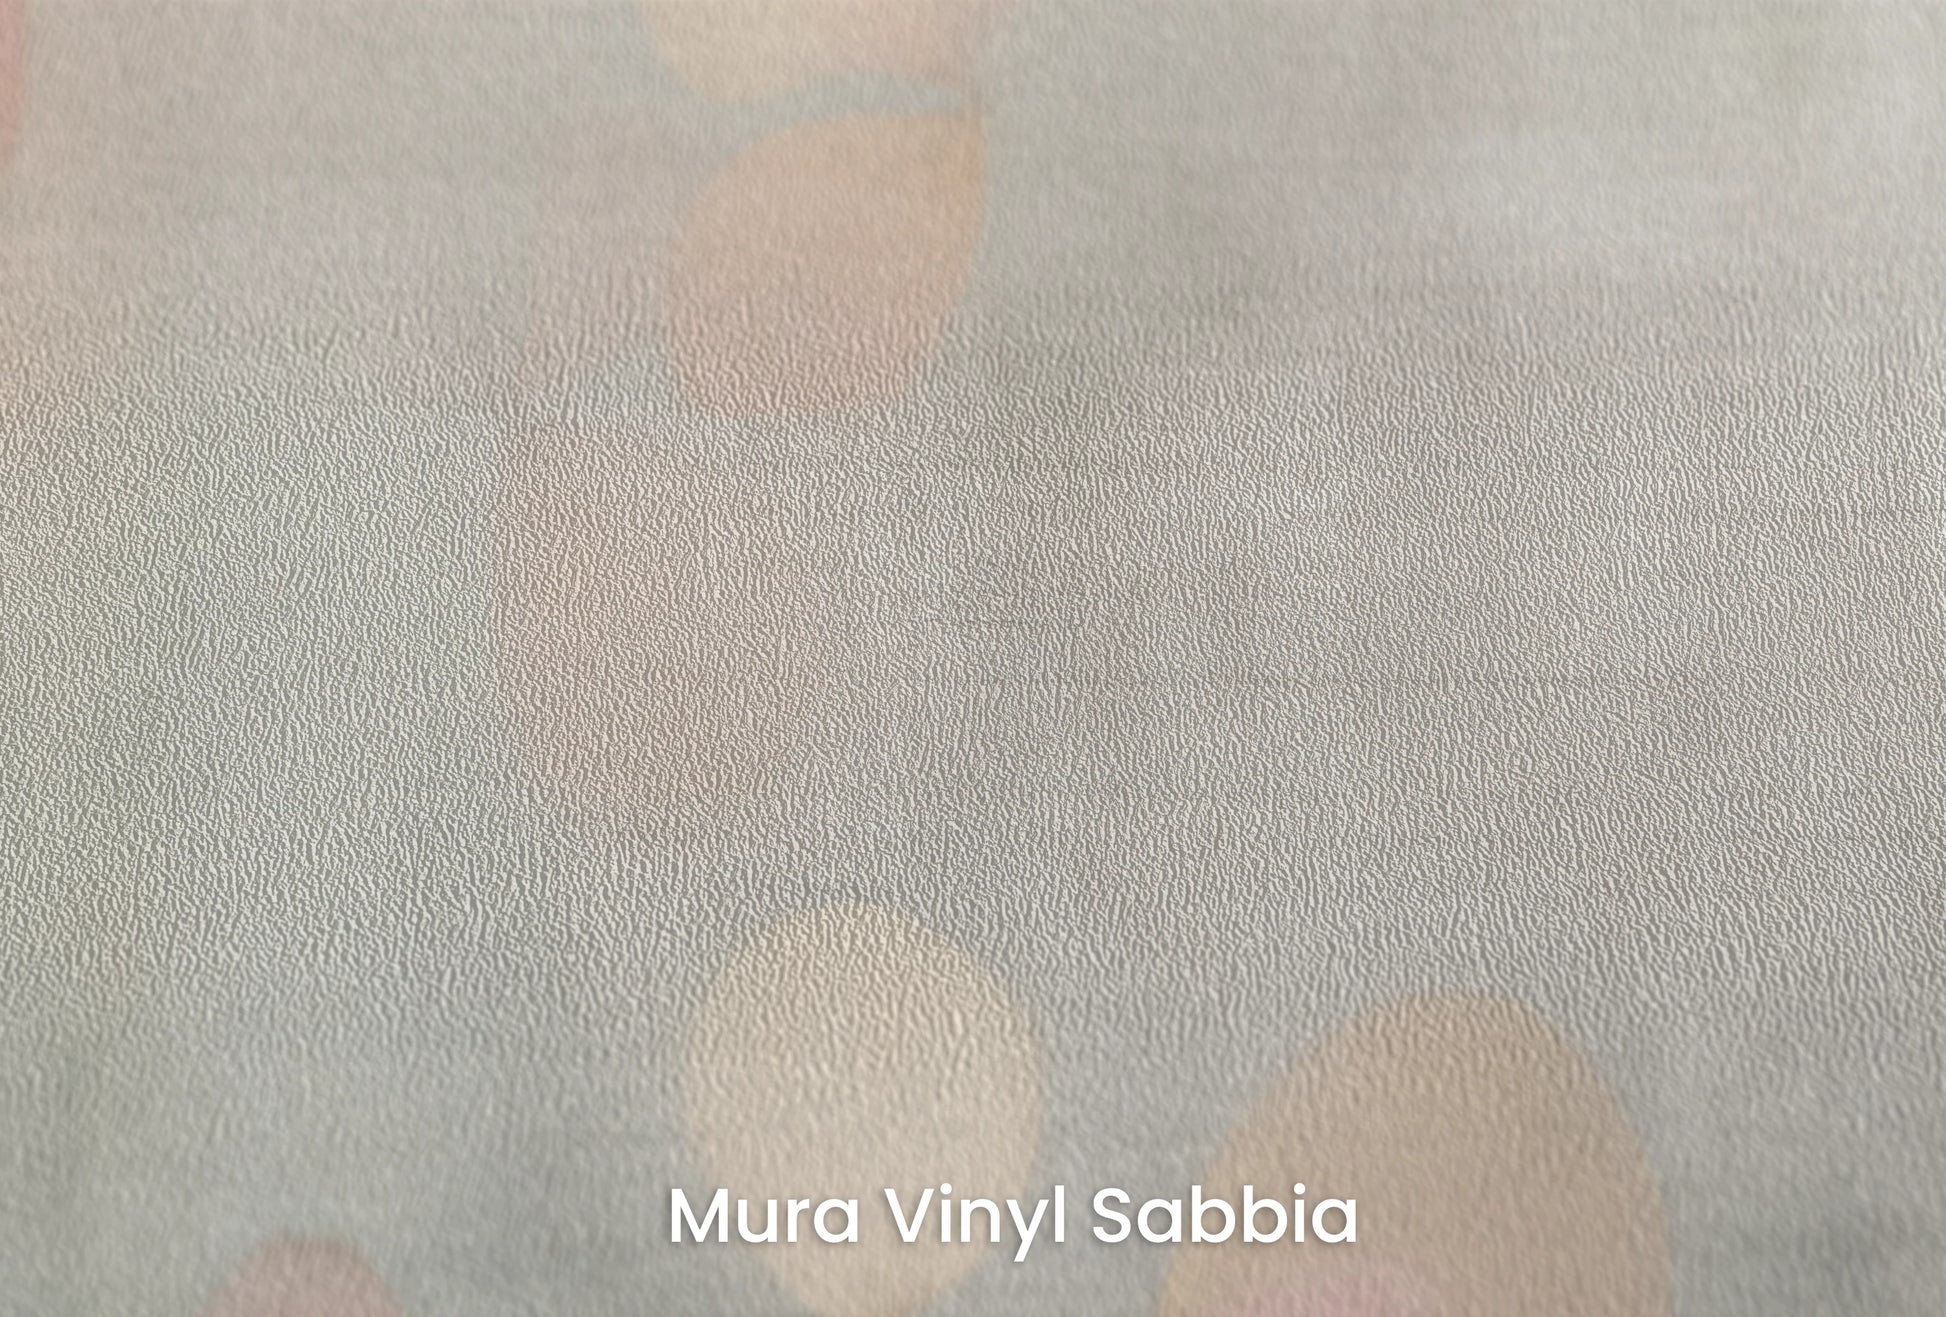 Zbliżenie na artystyczną fototapetę o nazwie Abstract Petals na podłożu Mura Vinyl Sabbia struktura grubego ziarna piasku.